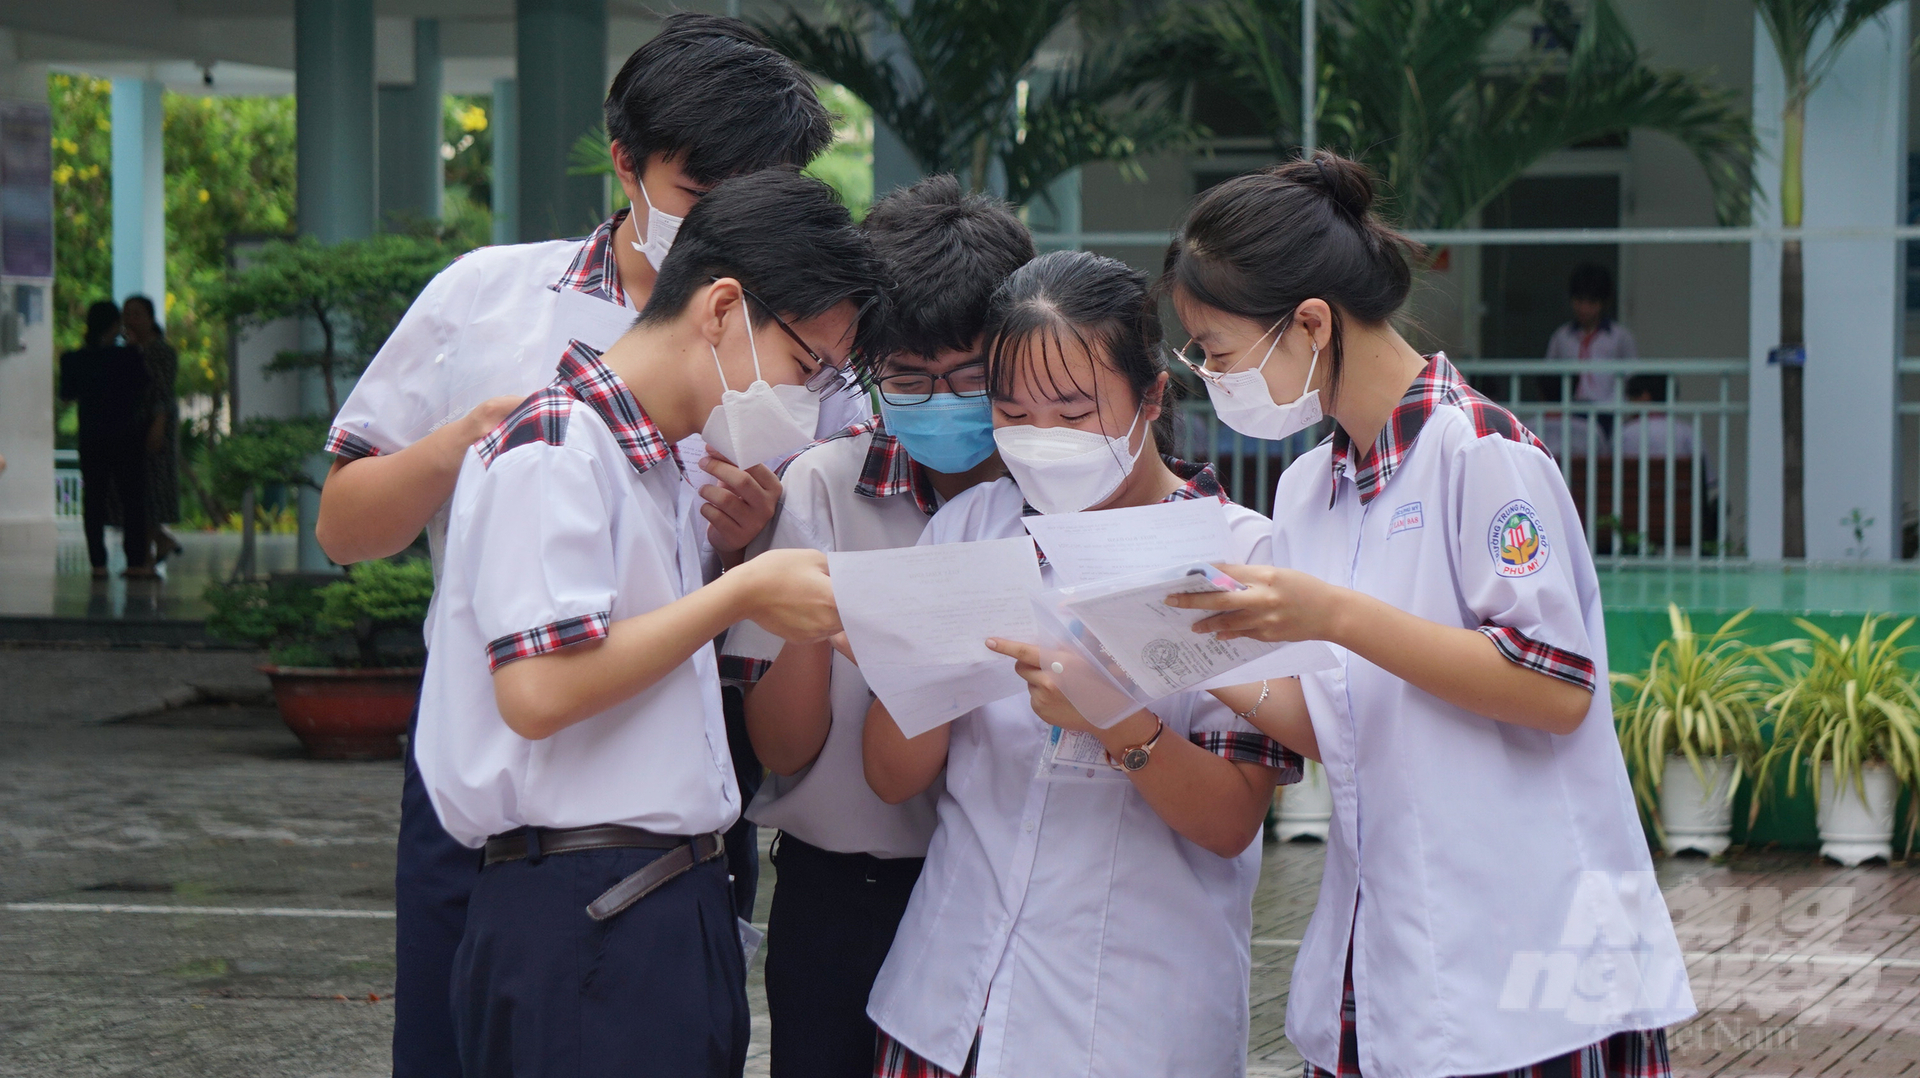 Một nhóm các bạn học sinh Trường THCS Phú Mỹ (quận Bình Thạnh) trao đổi trước khi bước vào môn thi đầu tiên. Ảnh: Nguyễn Thủy.